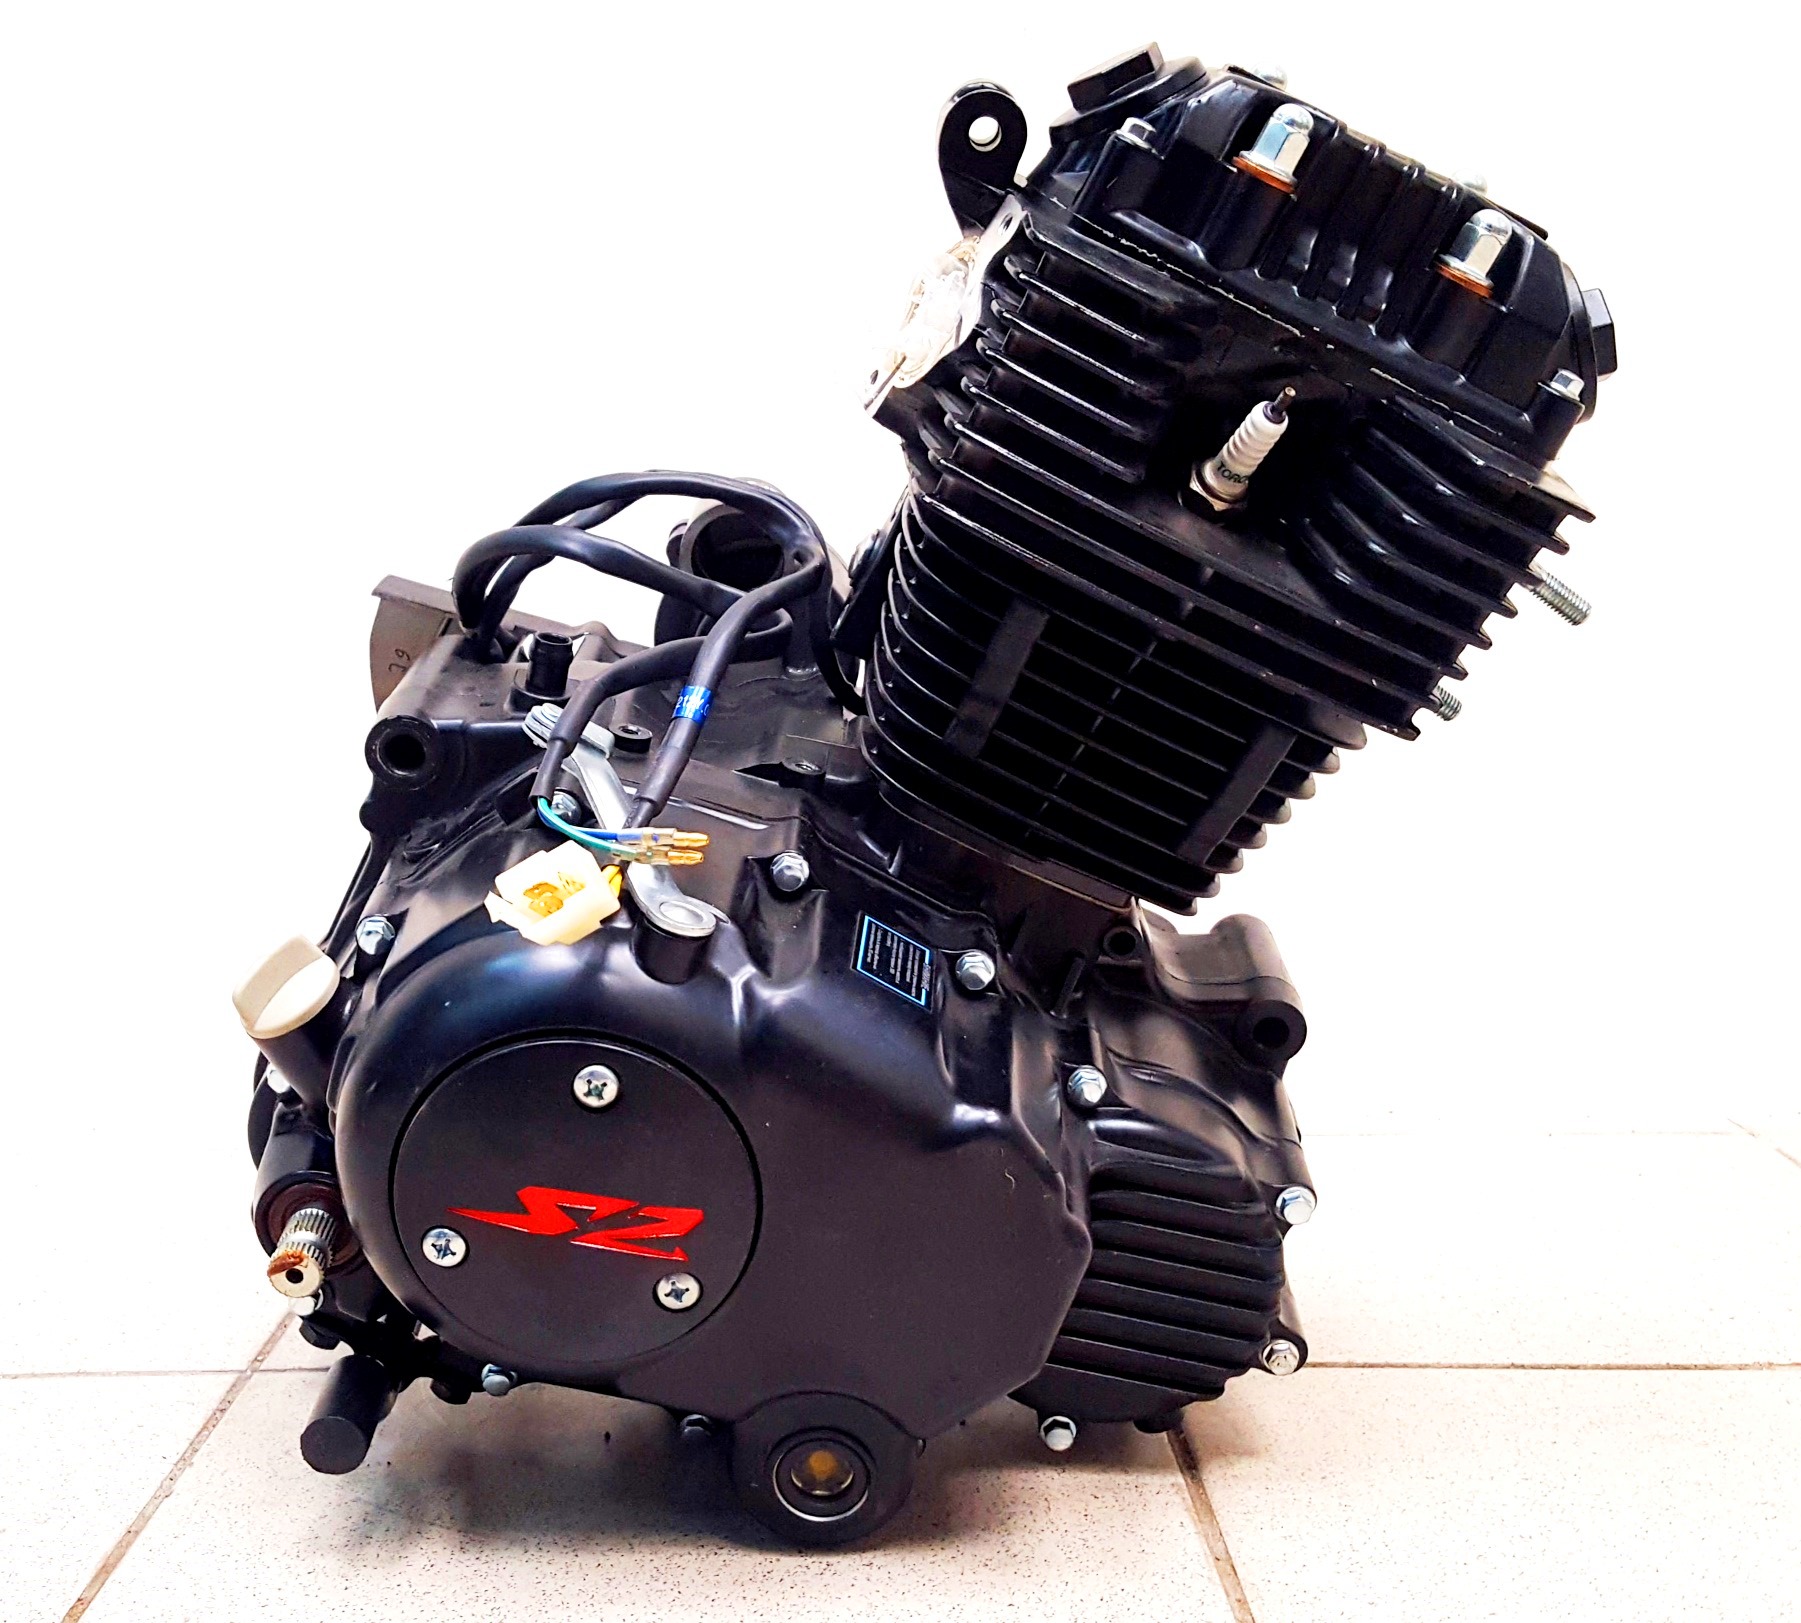 Мотор 250 кубов купить. Двигатель Zongshen 166 FMM. Мотор 169 FMM 250 куб. Zongshen 165fmm. Мотор 166 FMM 250сс.